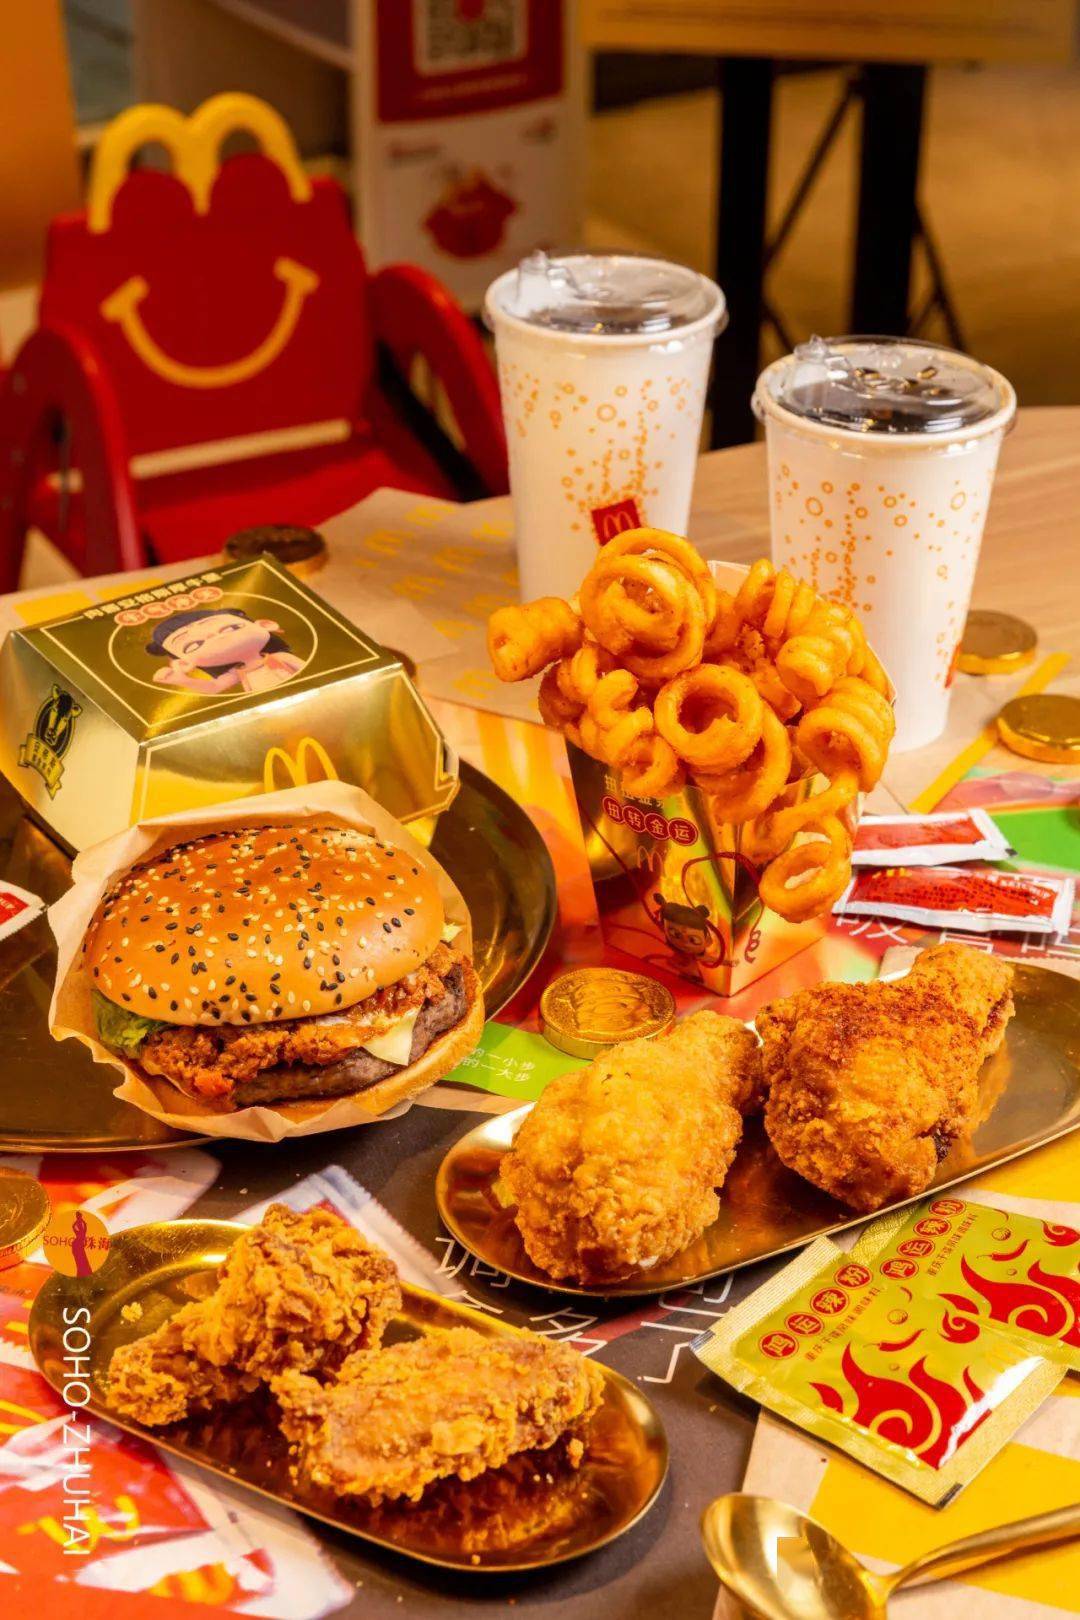 麦当劳新推出的好事成双双人套餐,包含了最受欢迎的几款单品,一份套餐